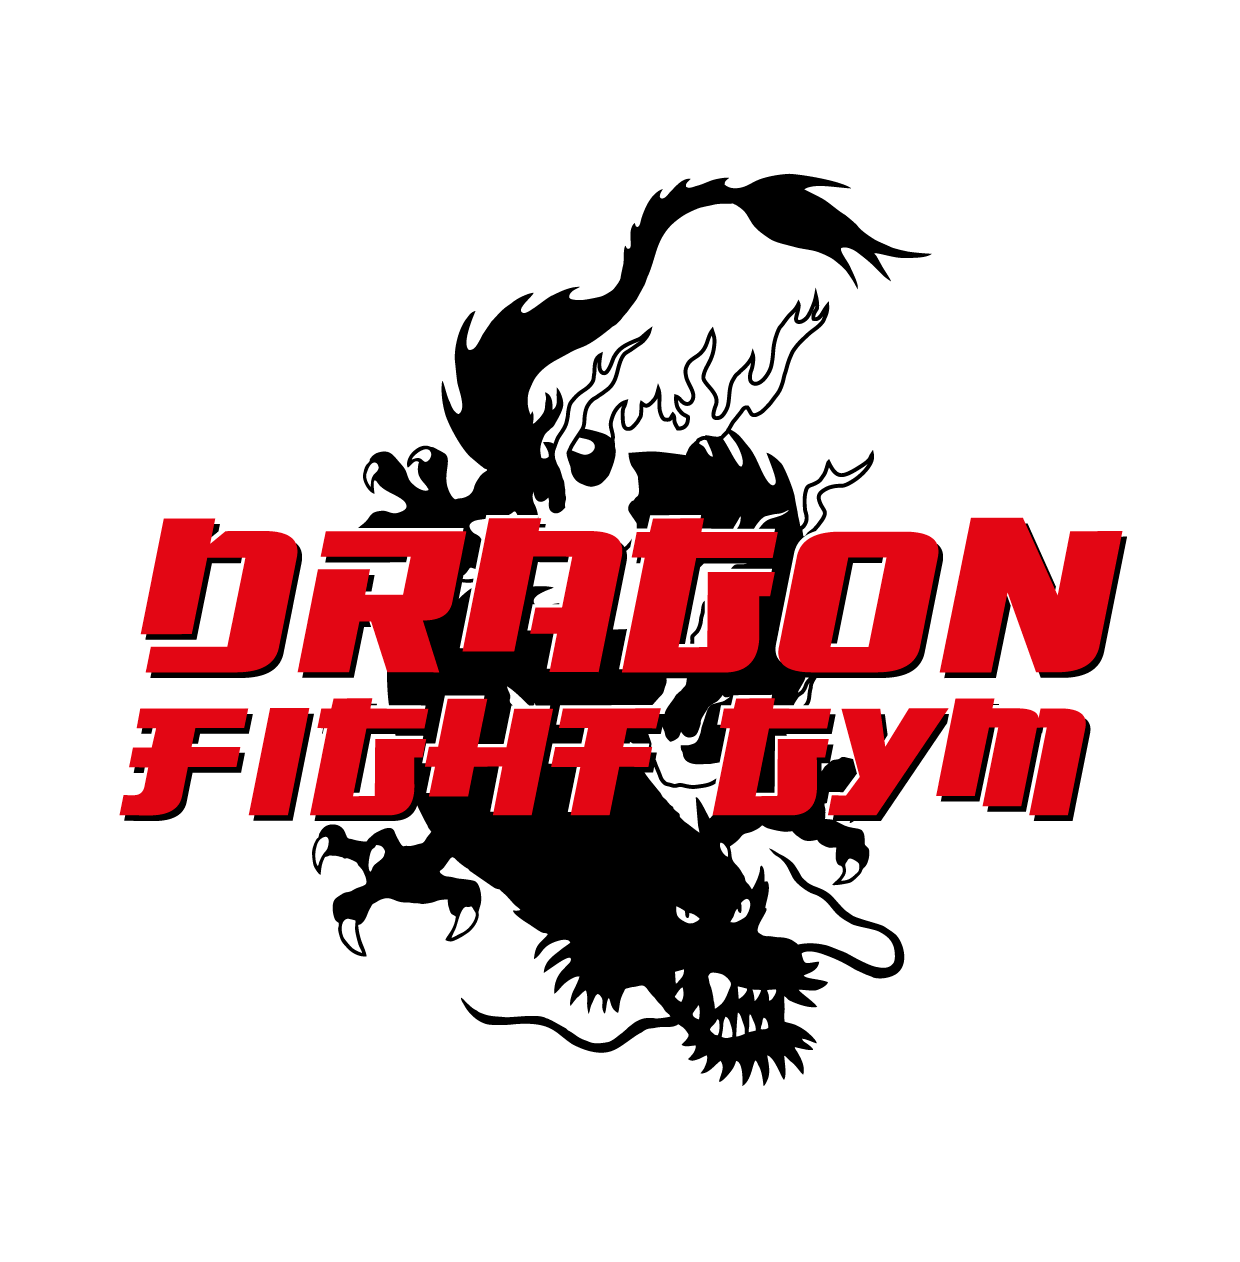 Dragon fight gym z.s.